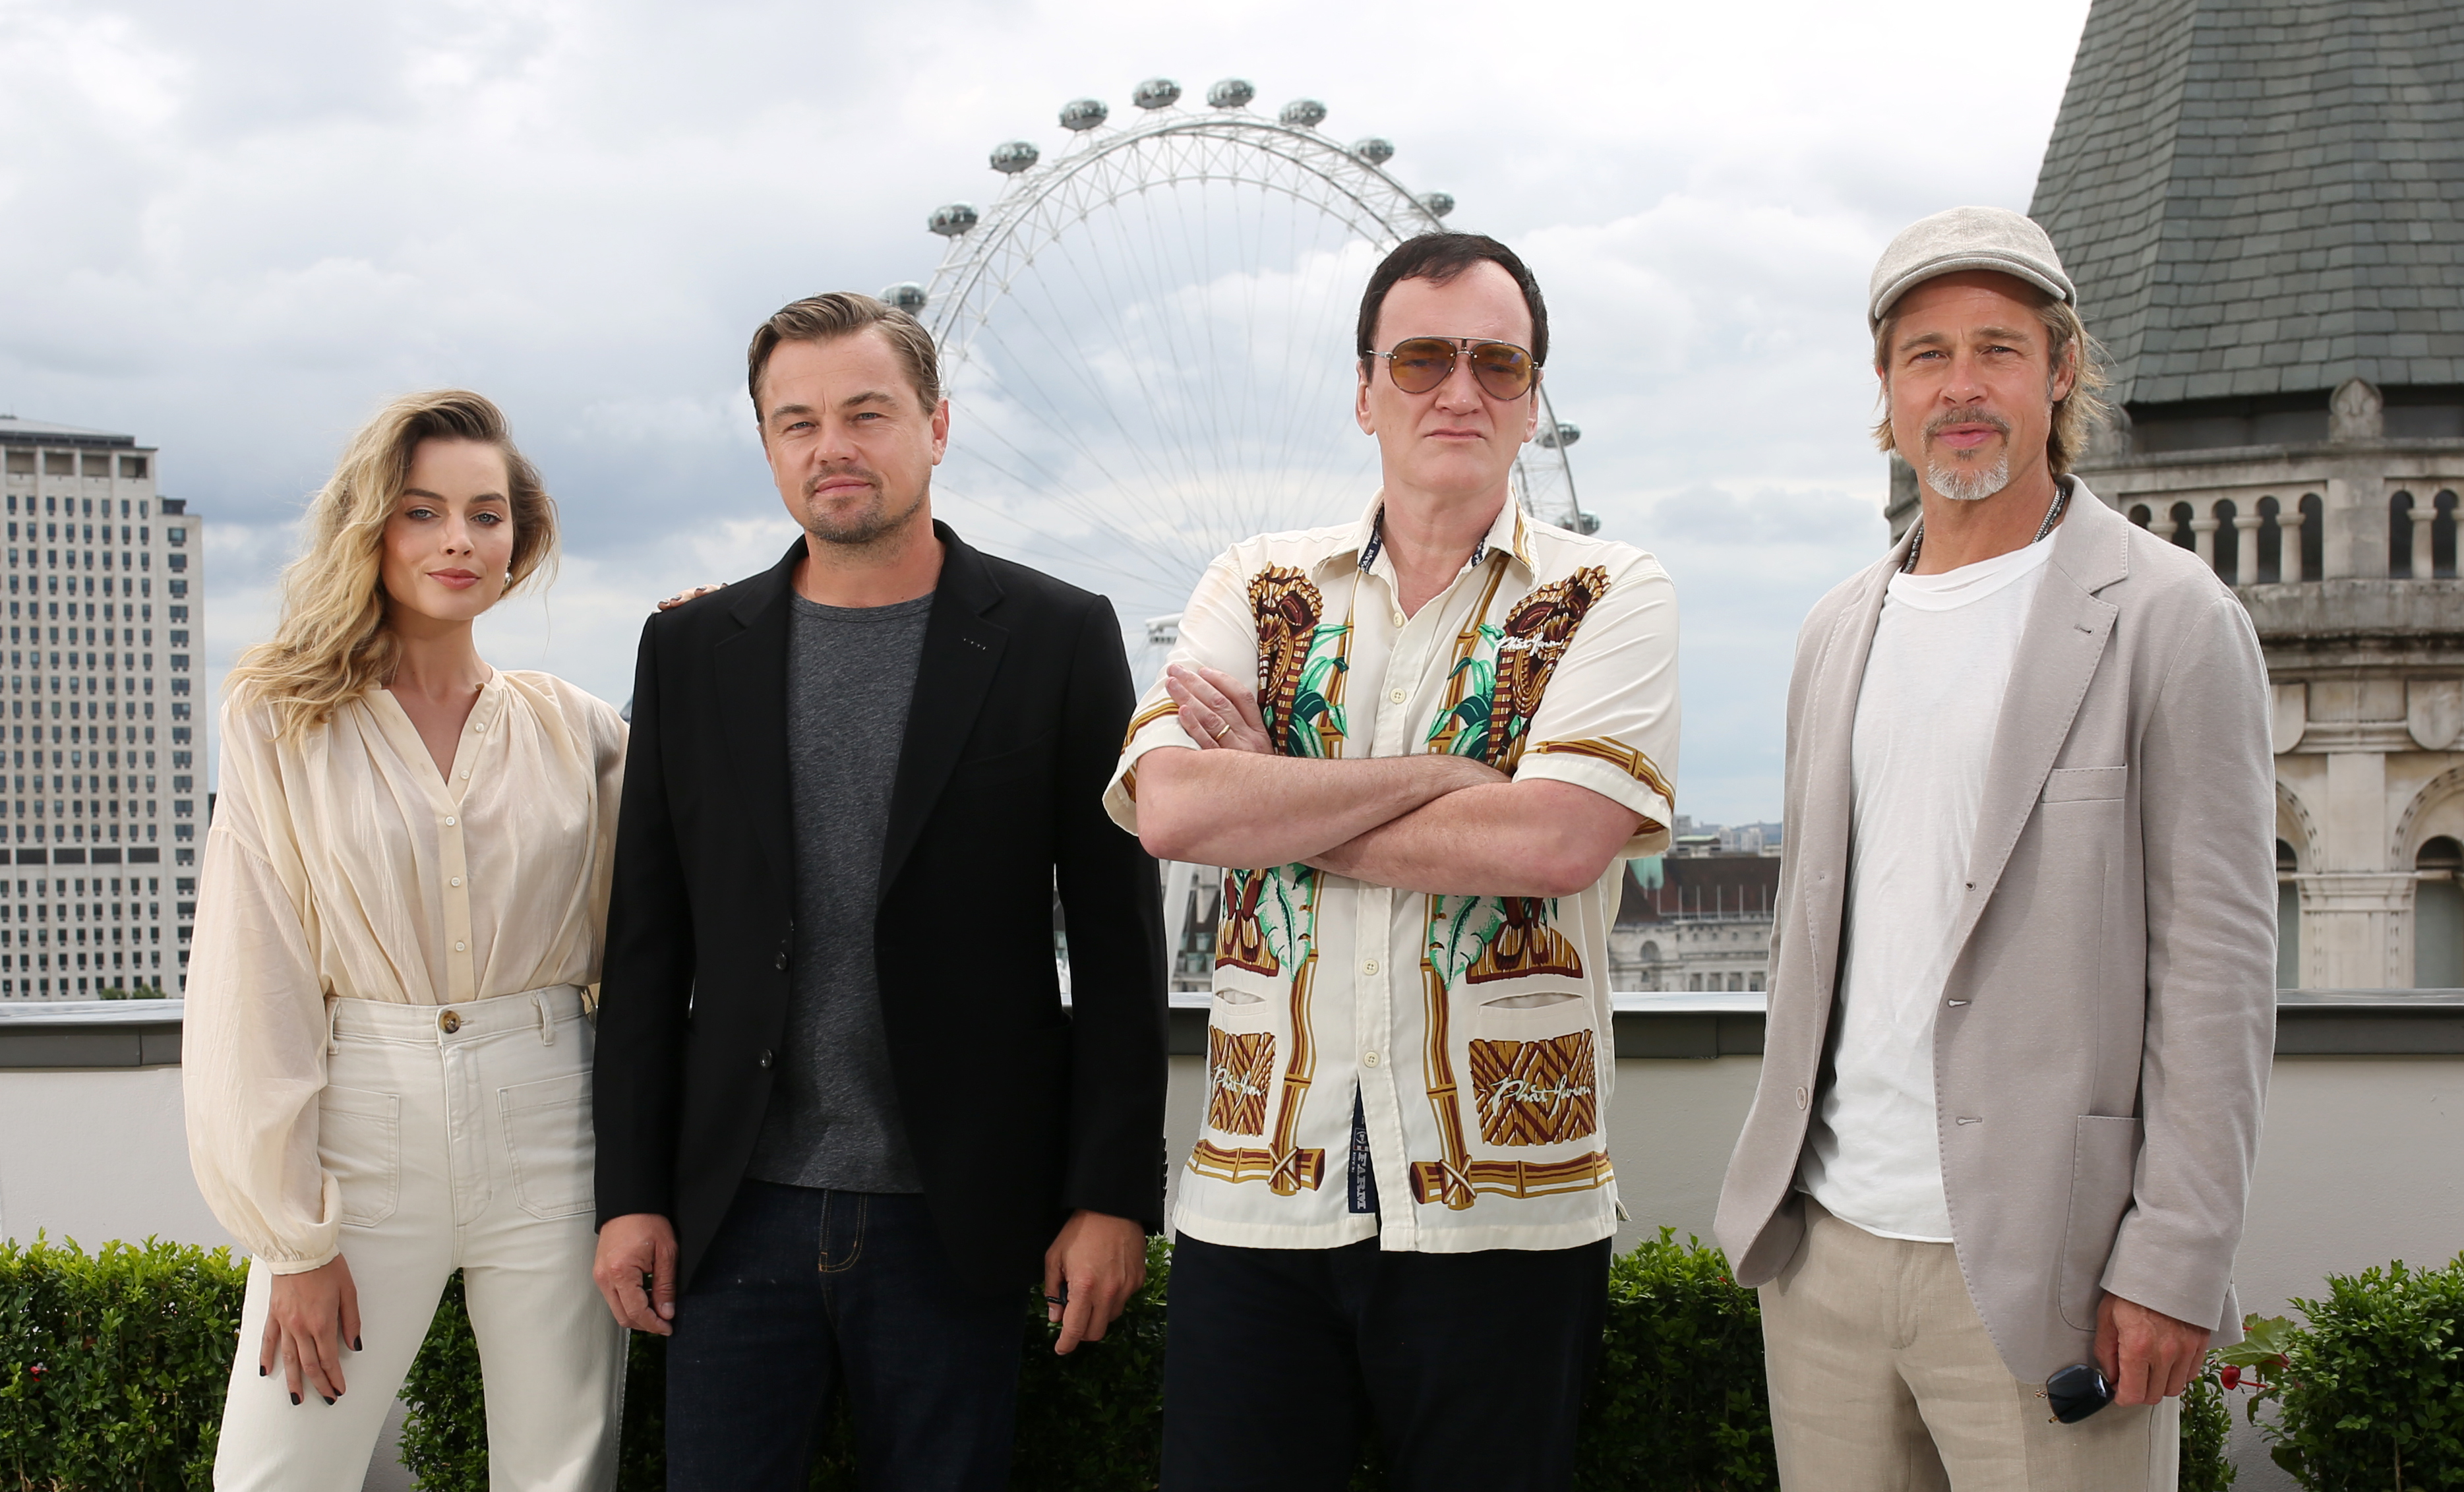 Margot Robbie, Leonardo DiCaprio, Quentin Tarantino, and Brad Pitt